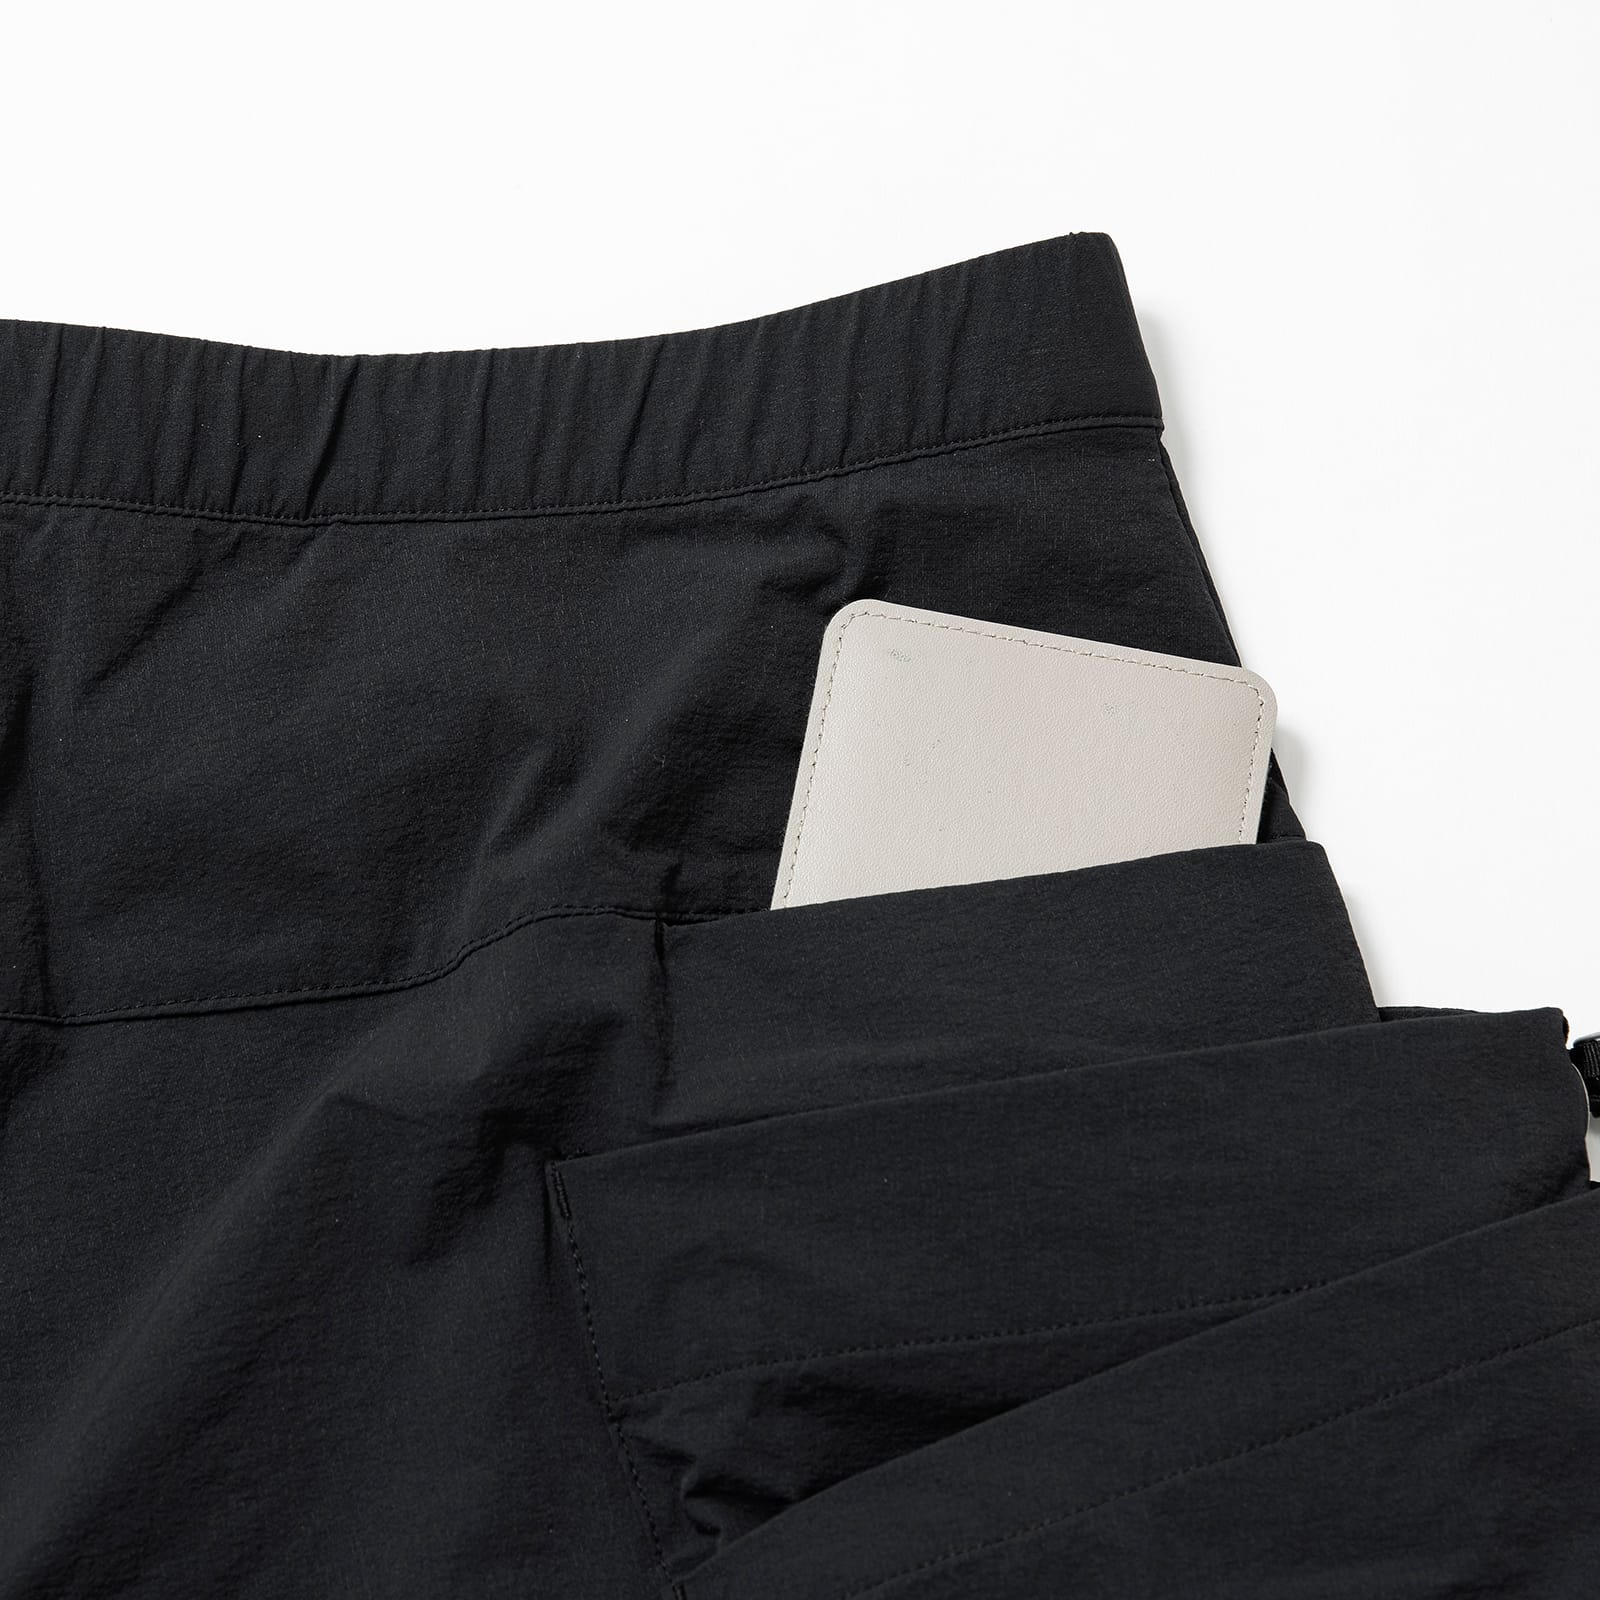 rigg shorts | karrimor カリマー | リュックサック・アウトドアウェア 